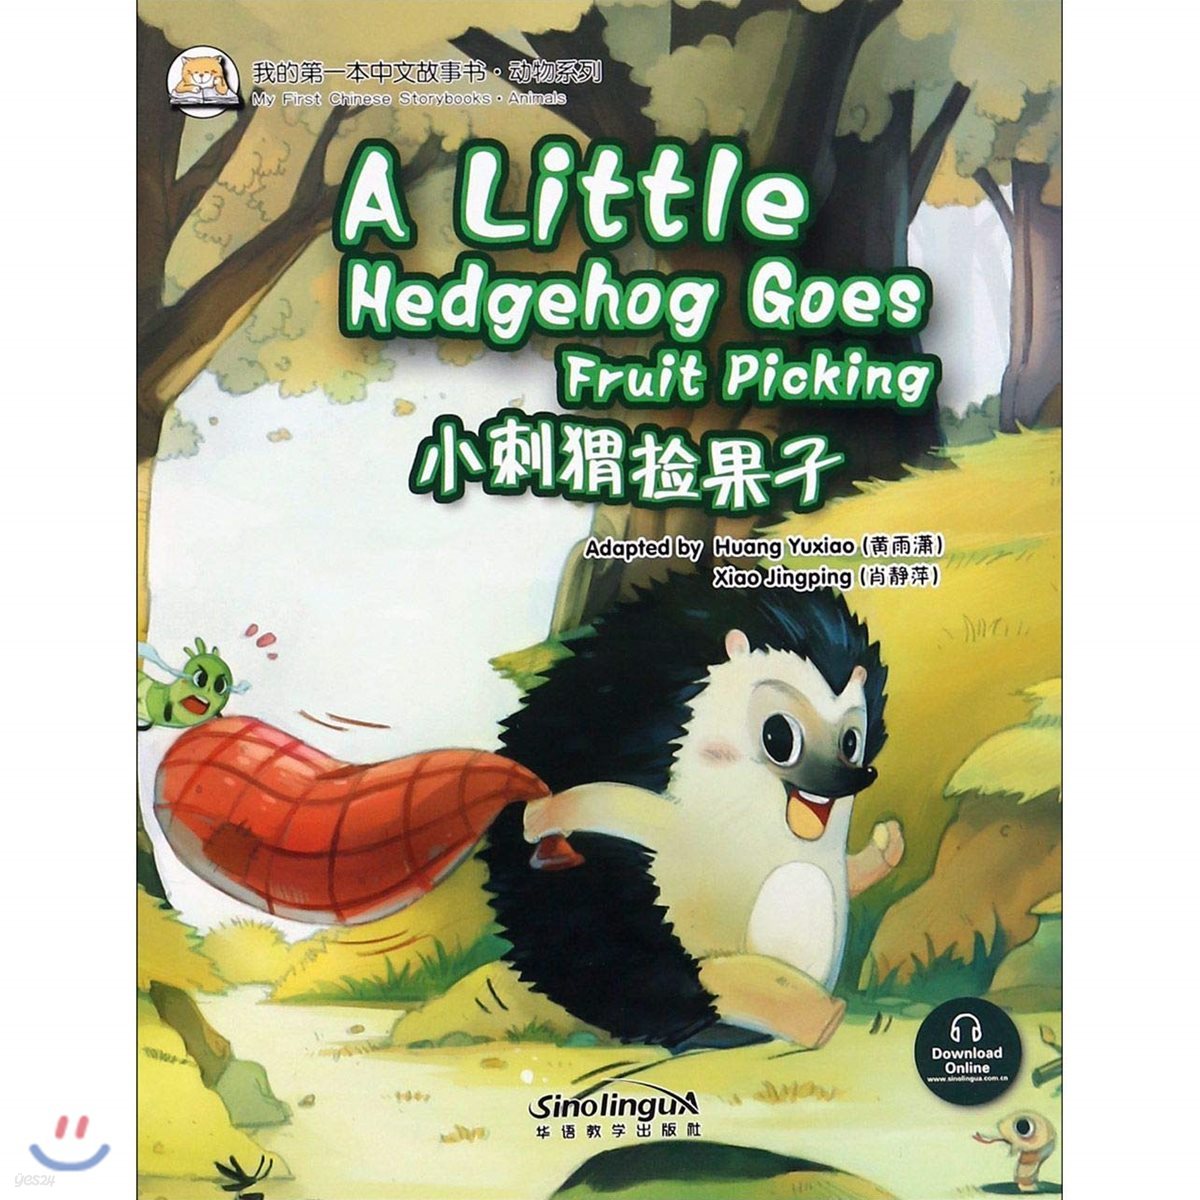 我的第一本中文故事?&#183;?物系列 : 小刺??果子 아적제일본중문고사서&#183;동물계열 : 소자위검과자 My First Chinese Storybooks&#183;Animals : A Little Goes hedghog Goes Fruit Picking